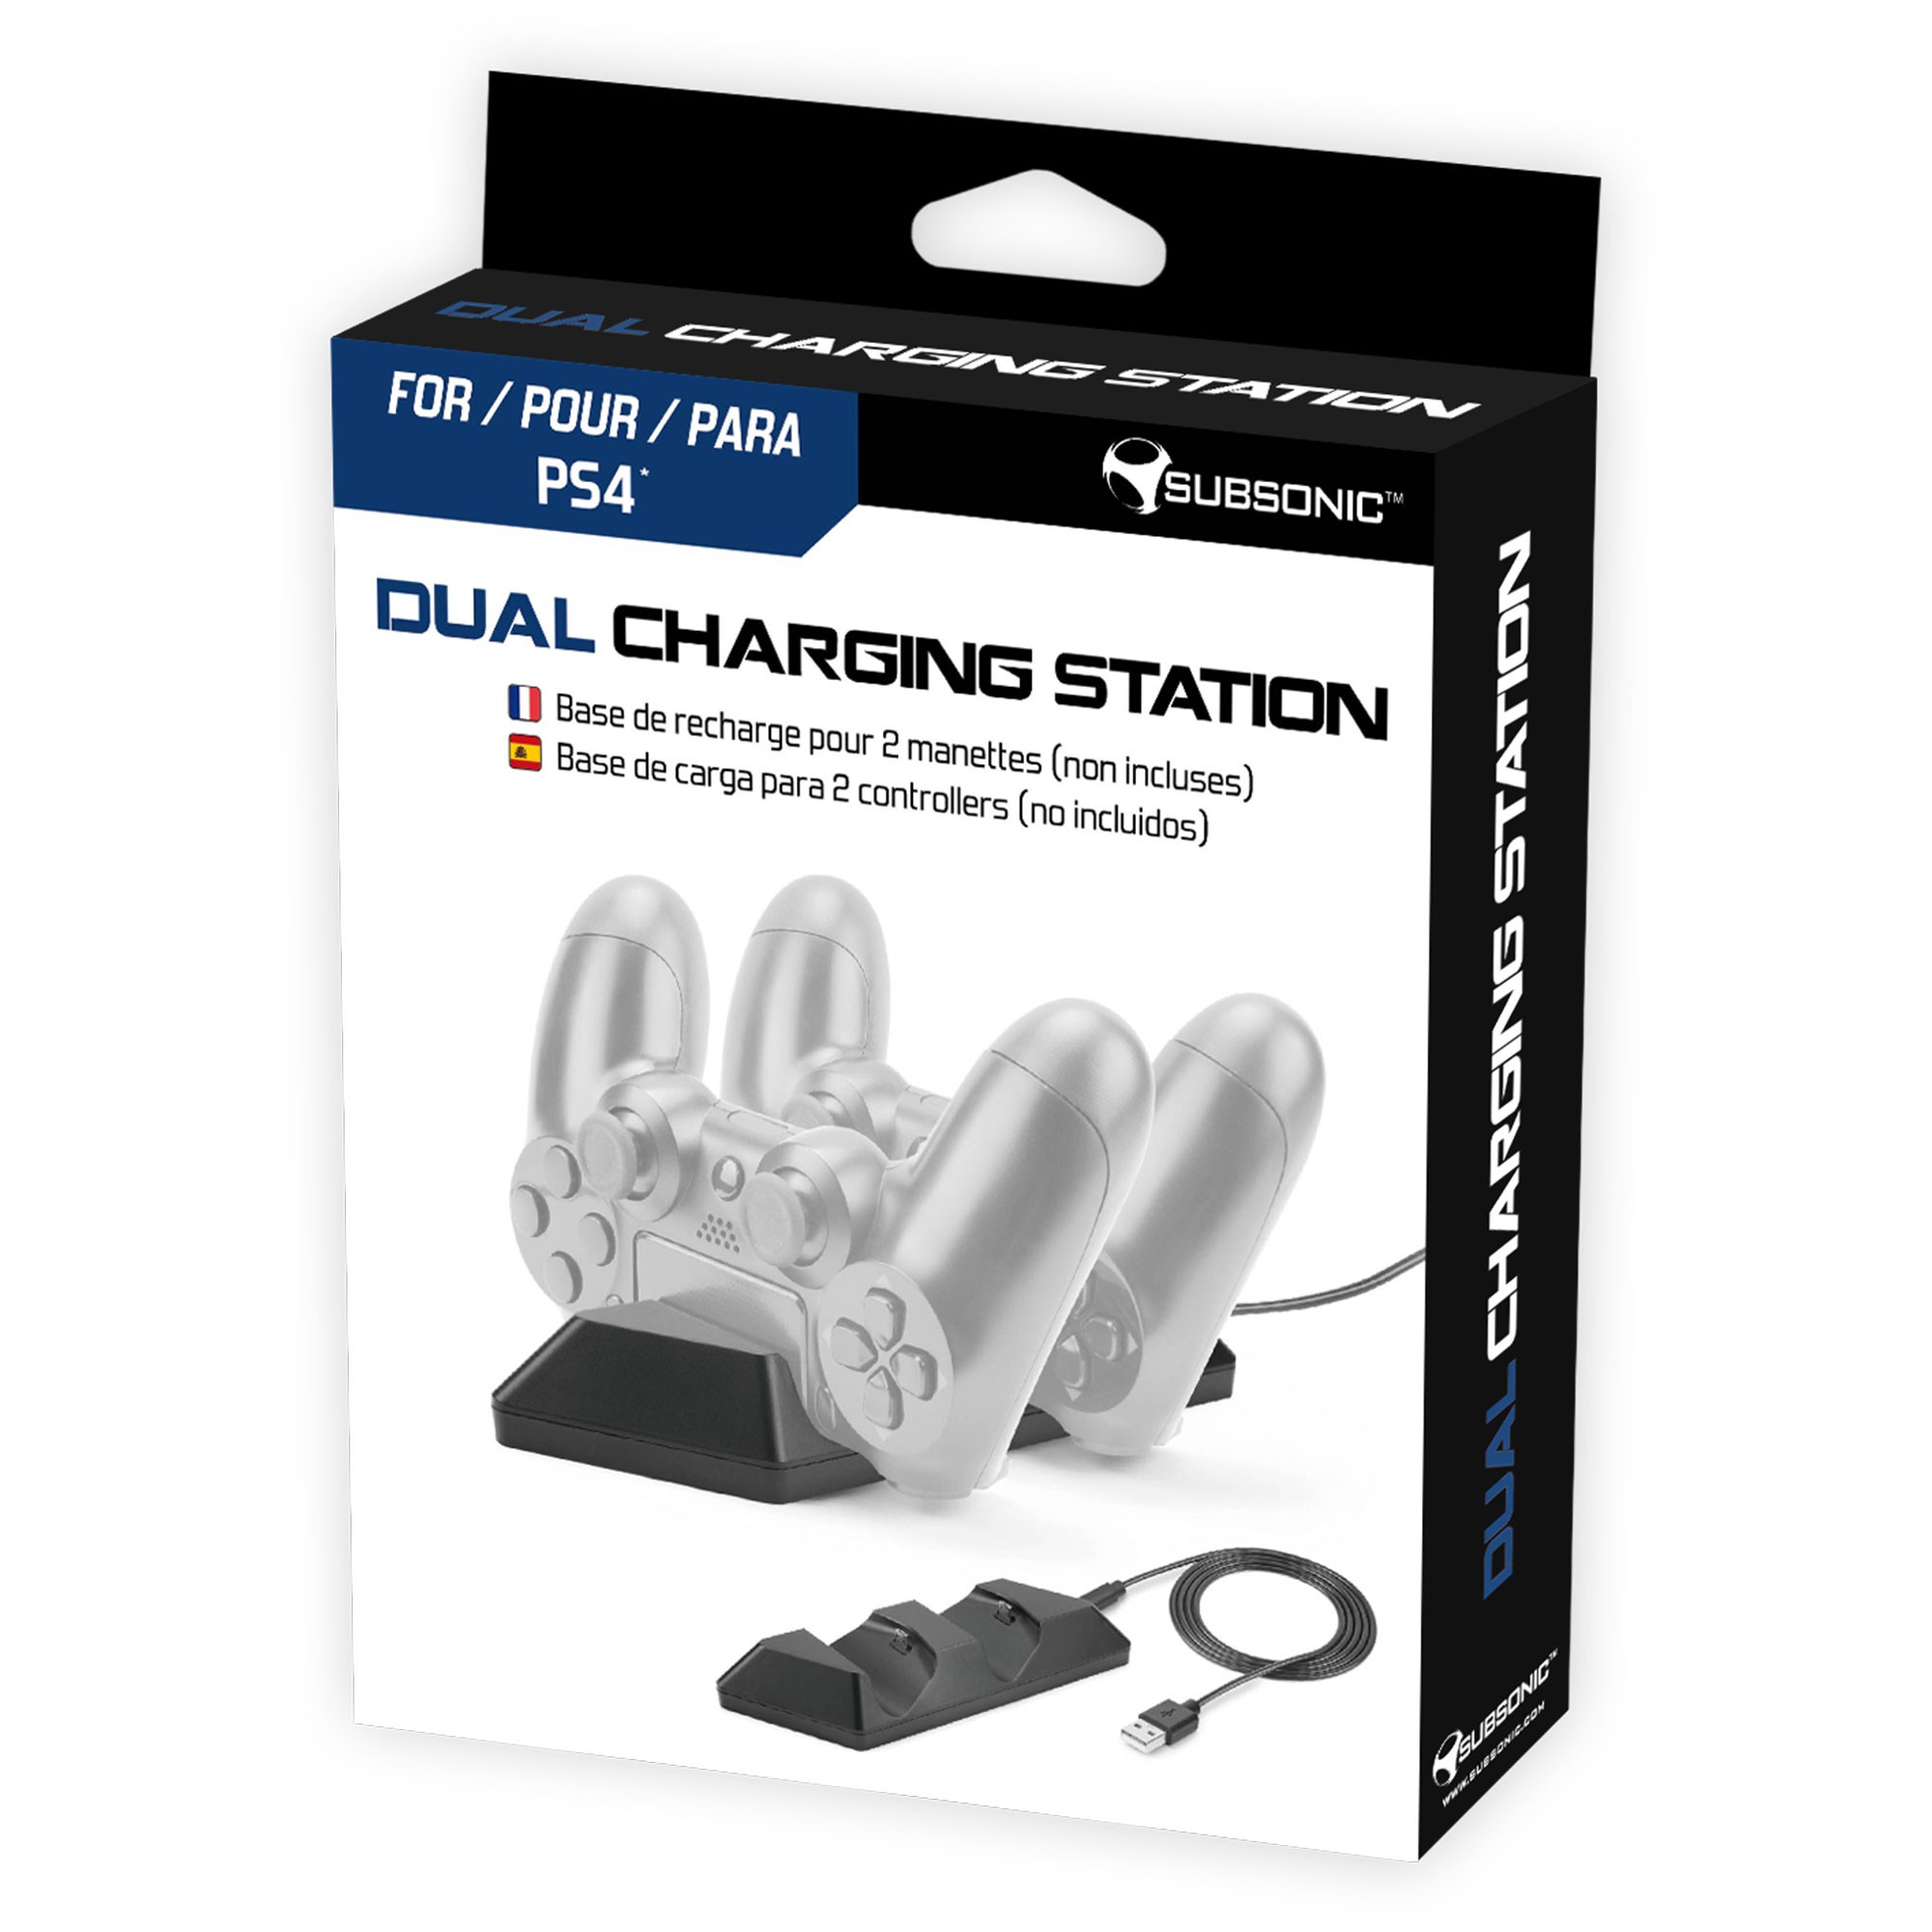 Station de recharge pour 2 manettes PS4 Dualshock® 4